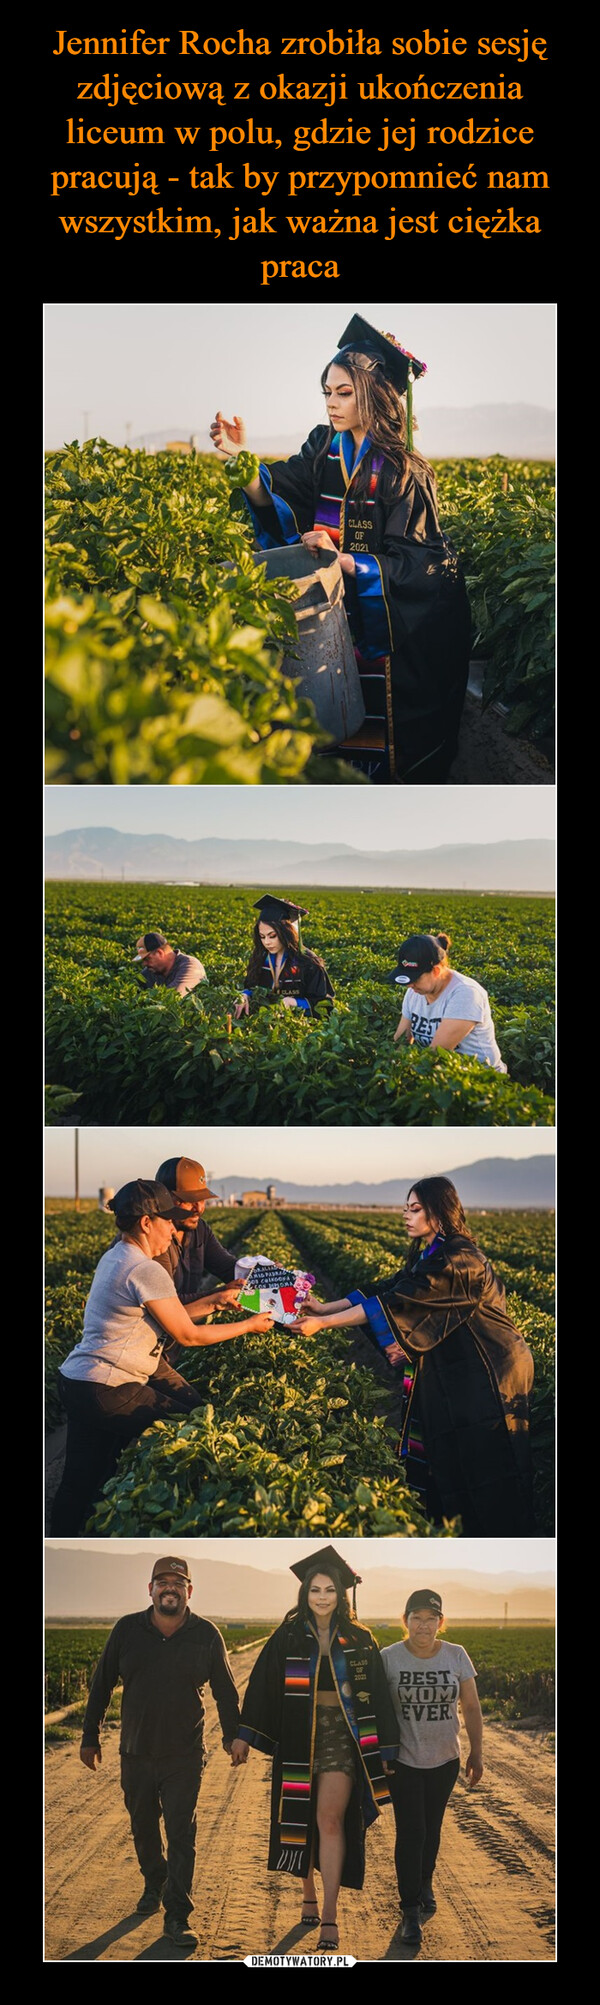 Jennifer Rocha zrobiła sobie sesję zdjęciową z okazji ukończenia liceum w polu, gdzie jej rodzice pracują - tak by przypomnieć nam wszystkim, jak ważna jest ciężka praca